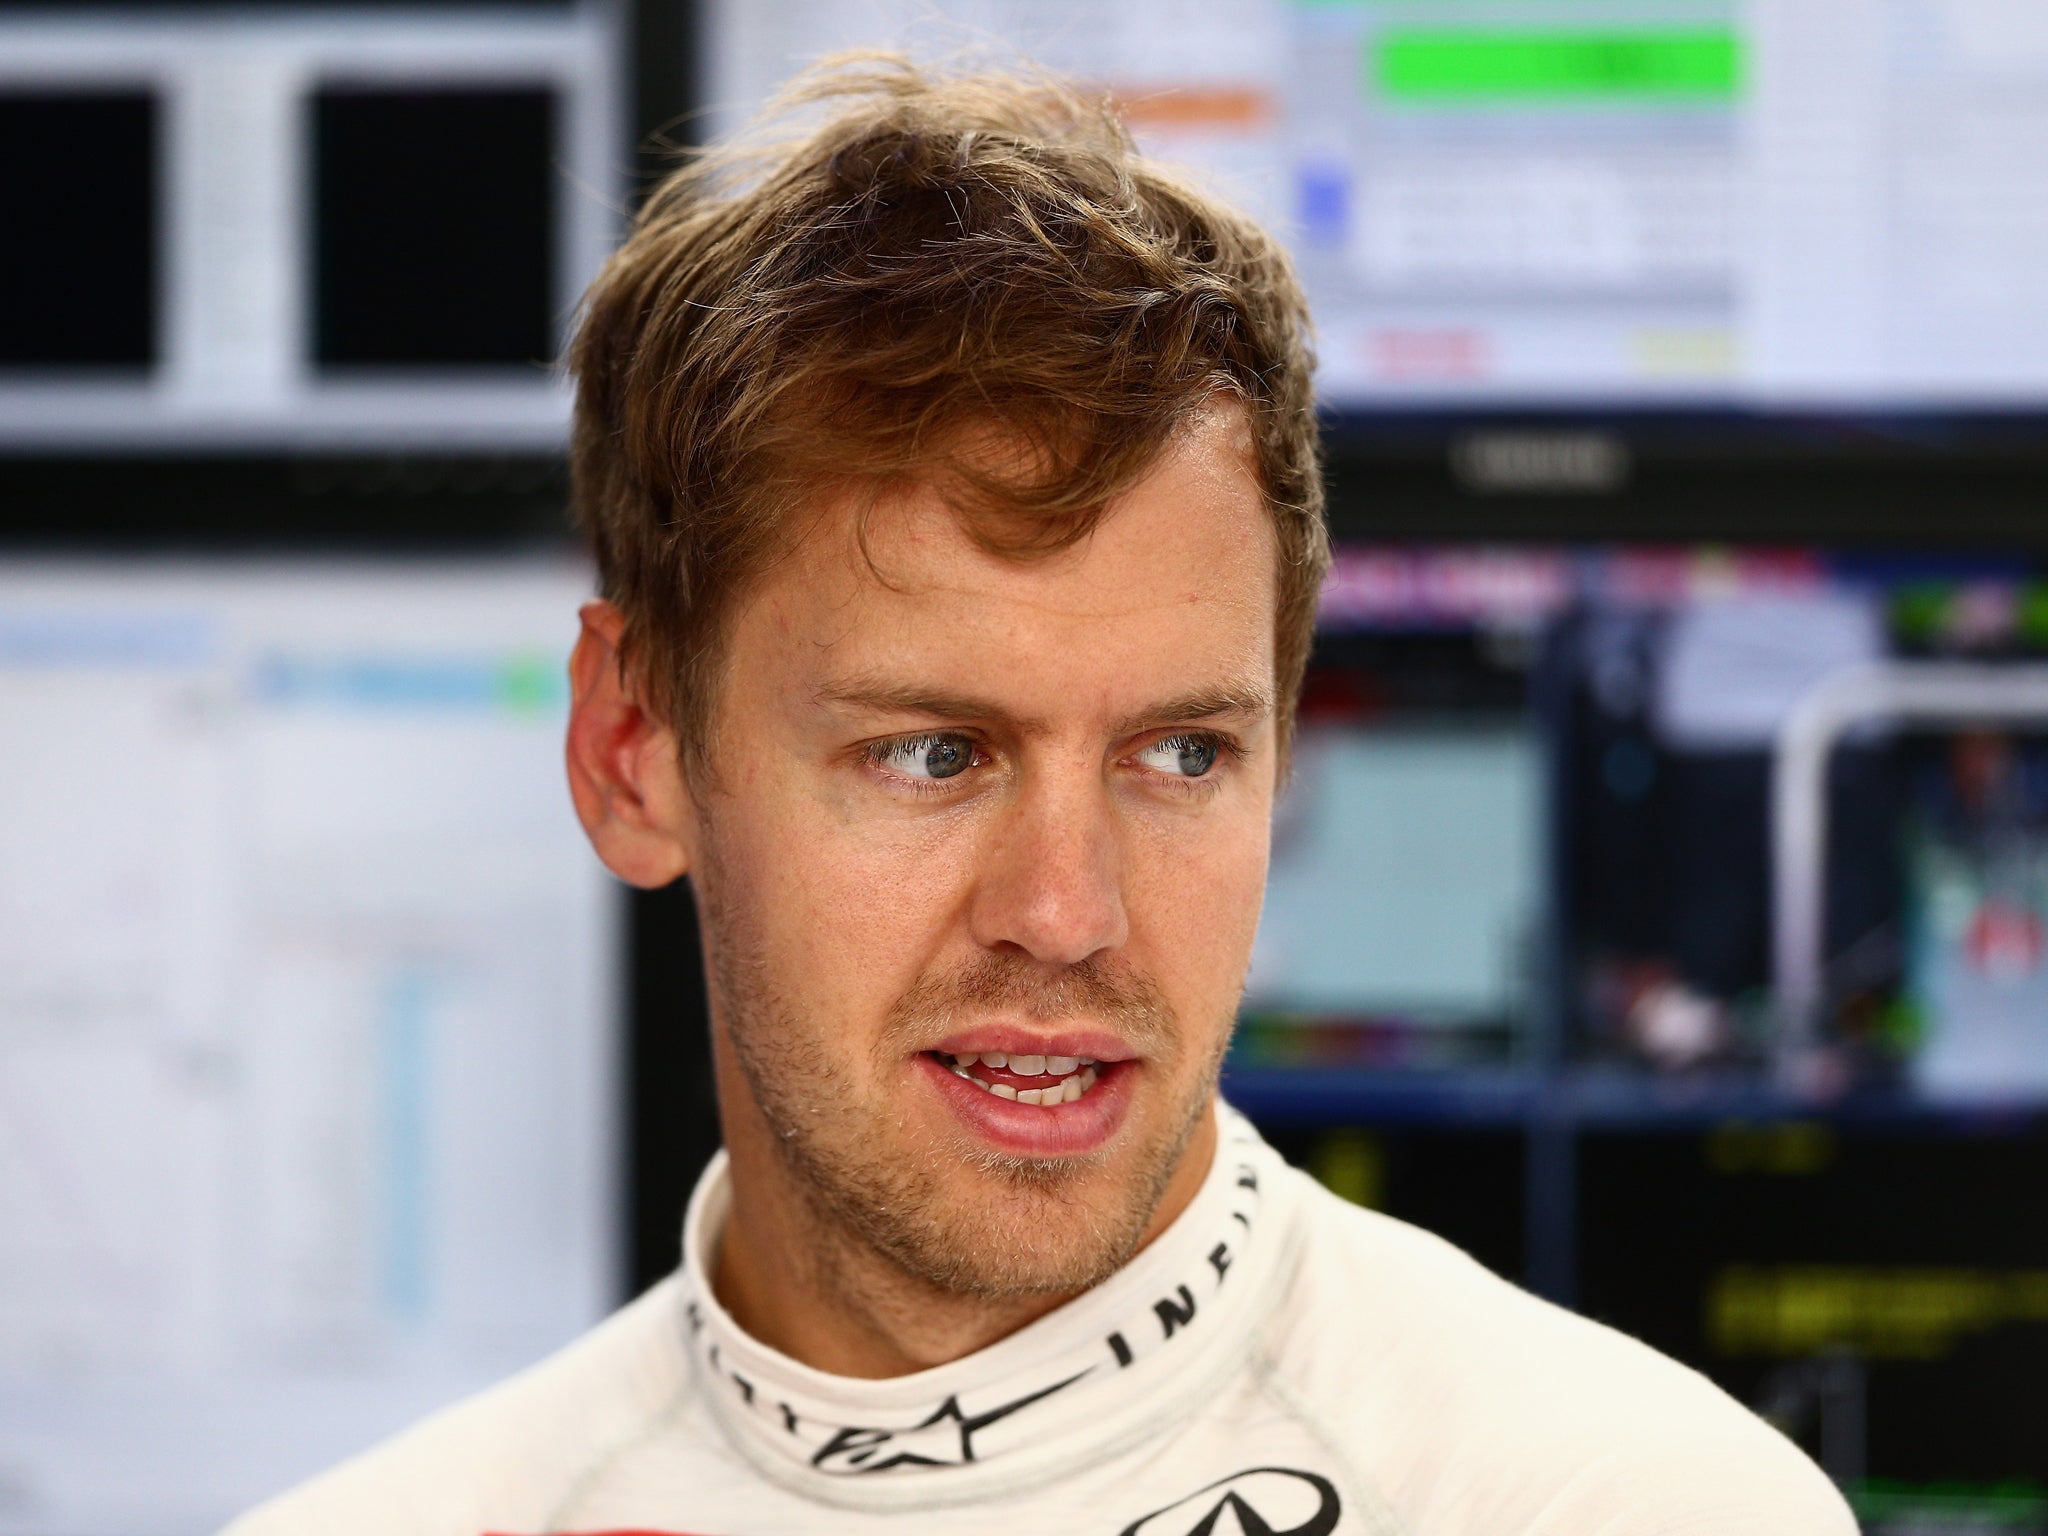 Sebastian Vettel looks on optimistically during practice for the Monaco Grand Prix